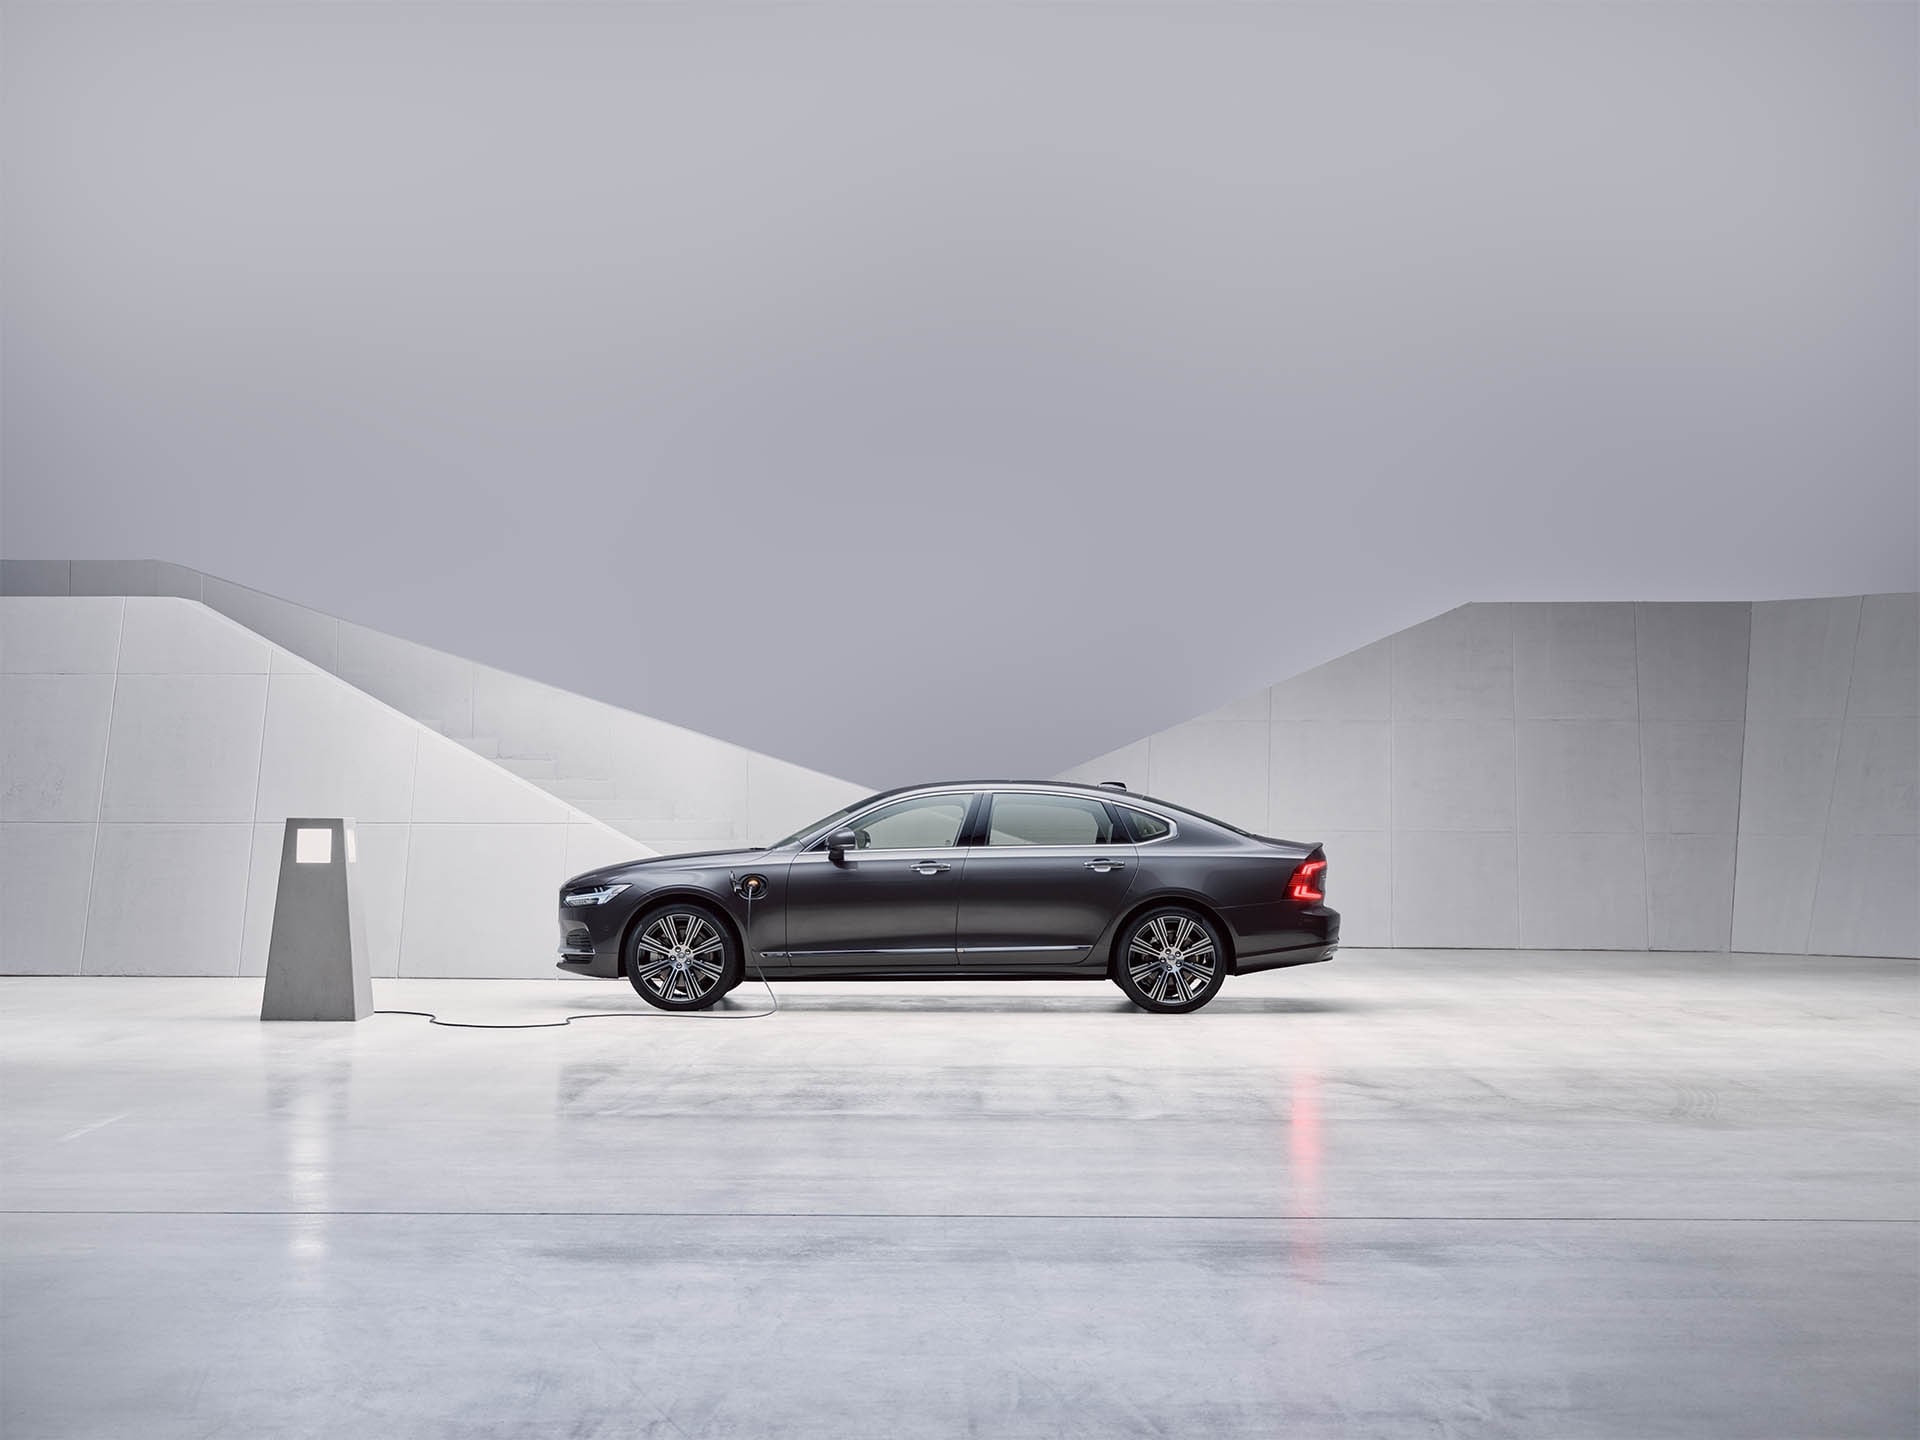 Berline Volvo S90 hybride rechargeable gris galet métallisé, en charge